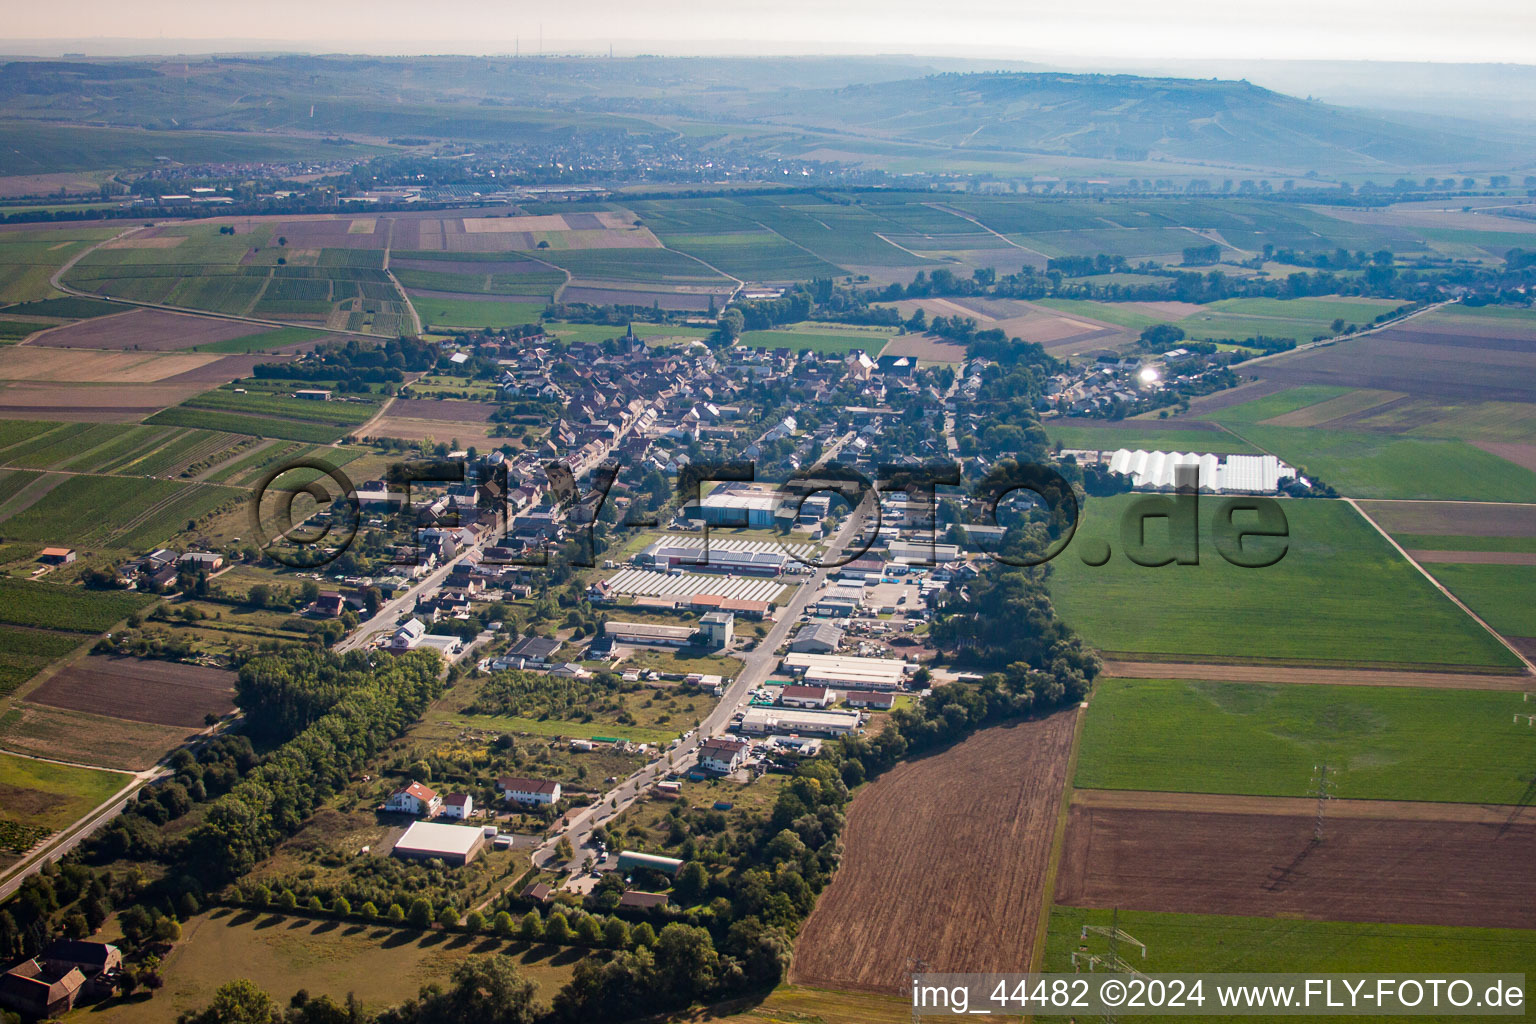 Vue aérienne de Vue des rues et des maisons des quartiers résidentiels à Pfaffen-Schwabenheim dans le département Rhénanie-Palatinat, Allemagne